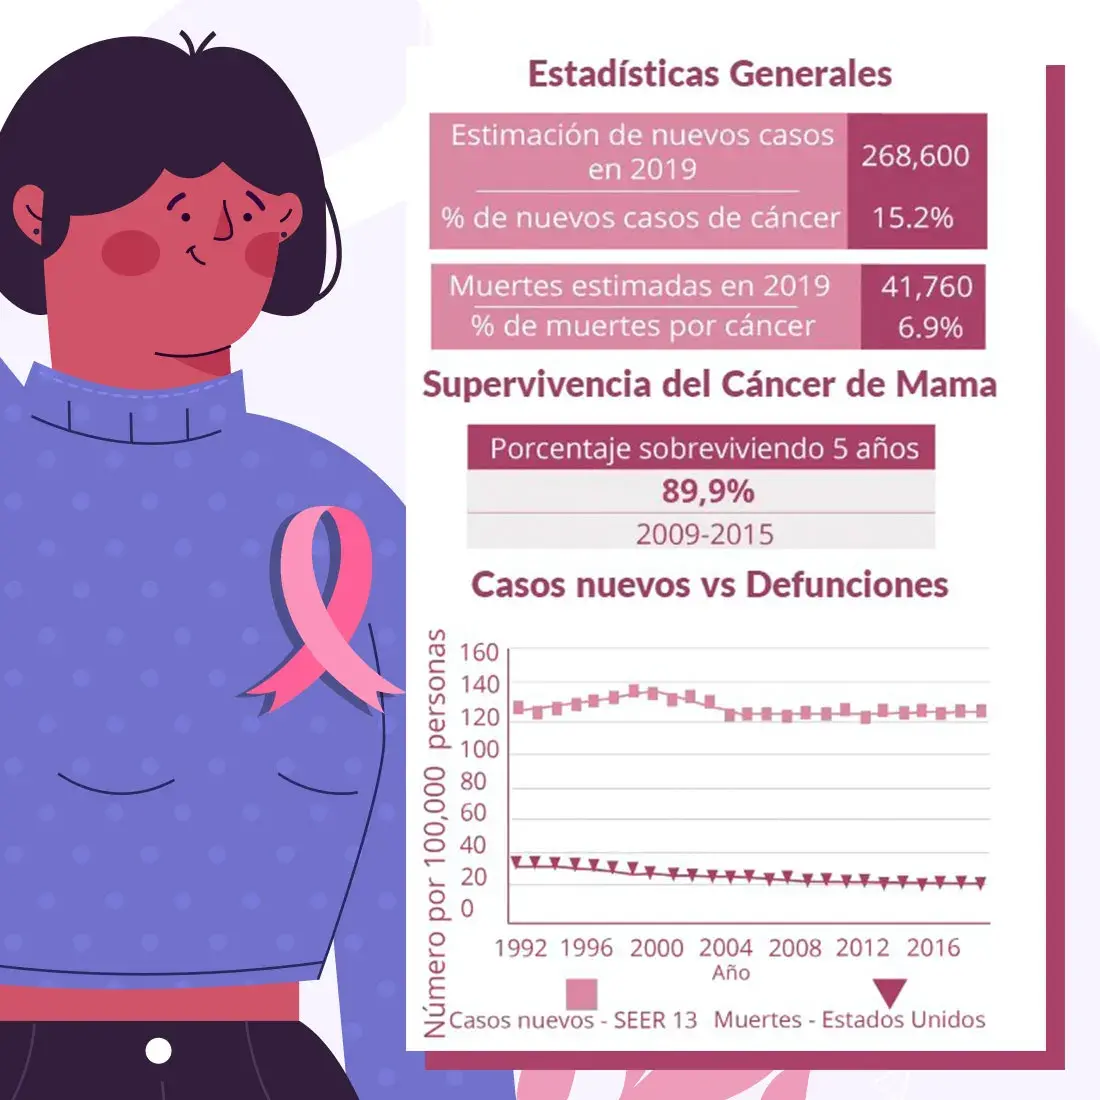 Estadísticas generales del cáncer de mama en el año 2019.